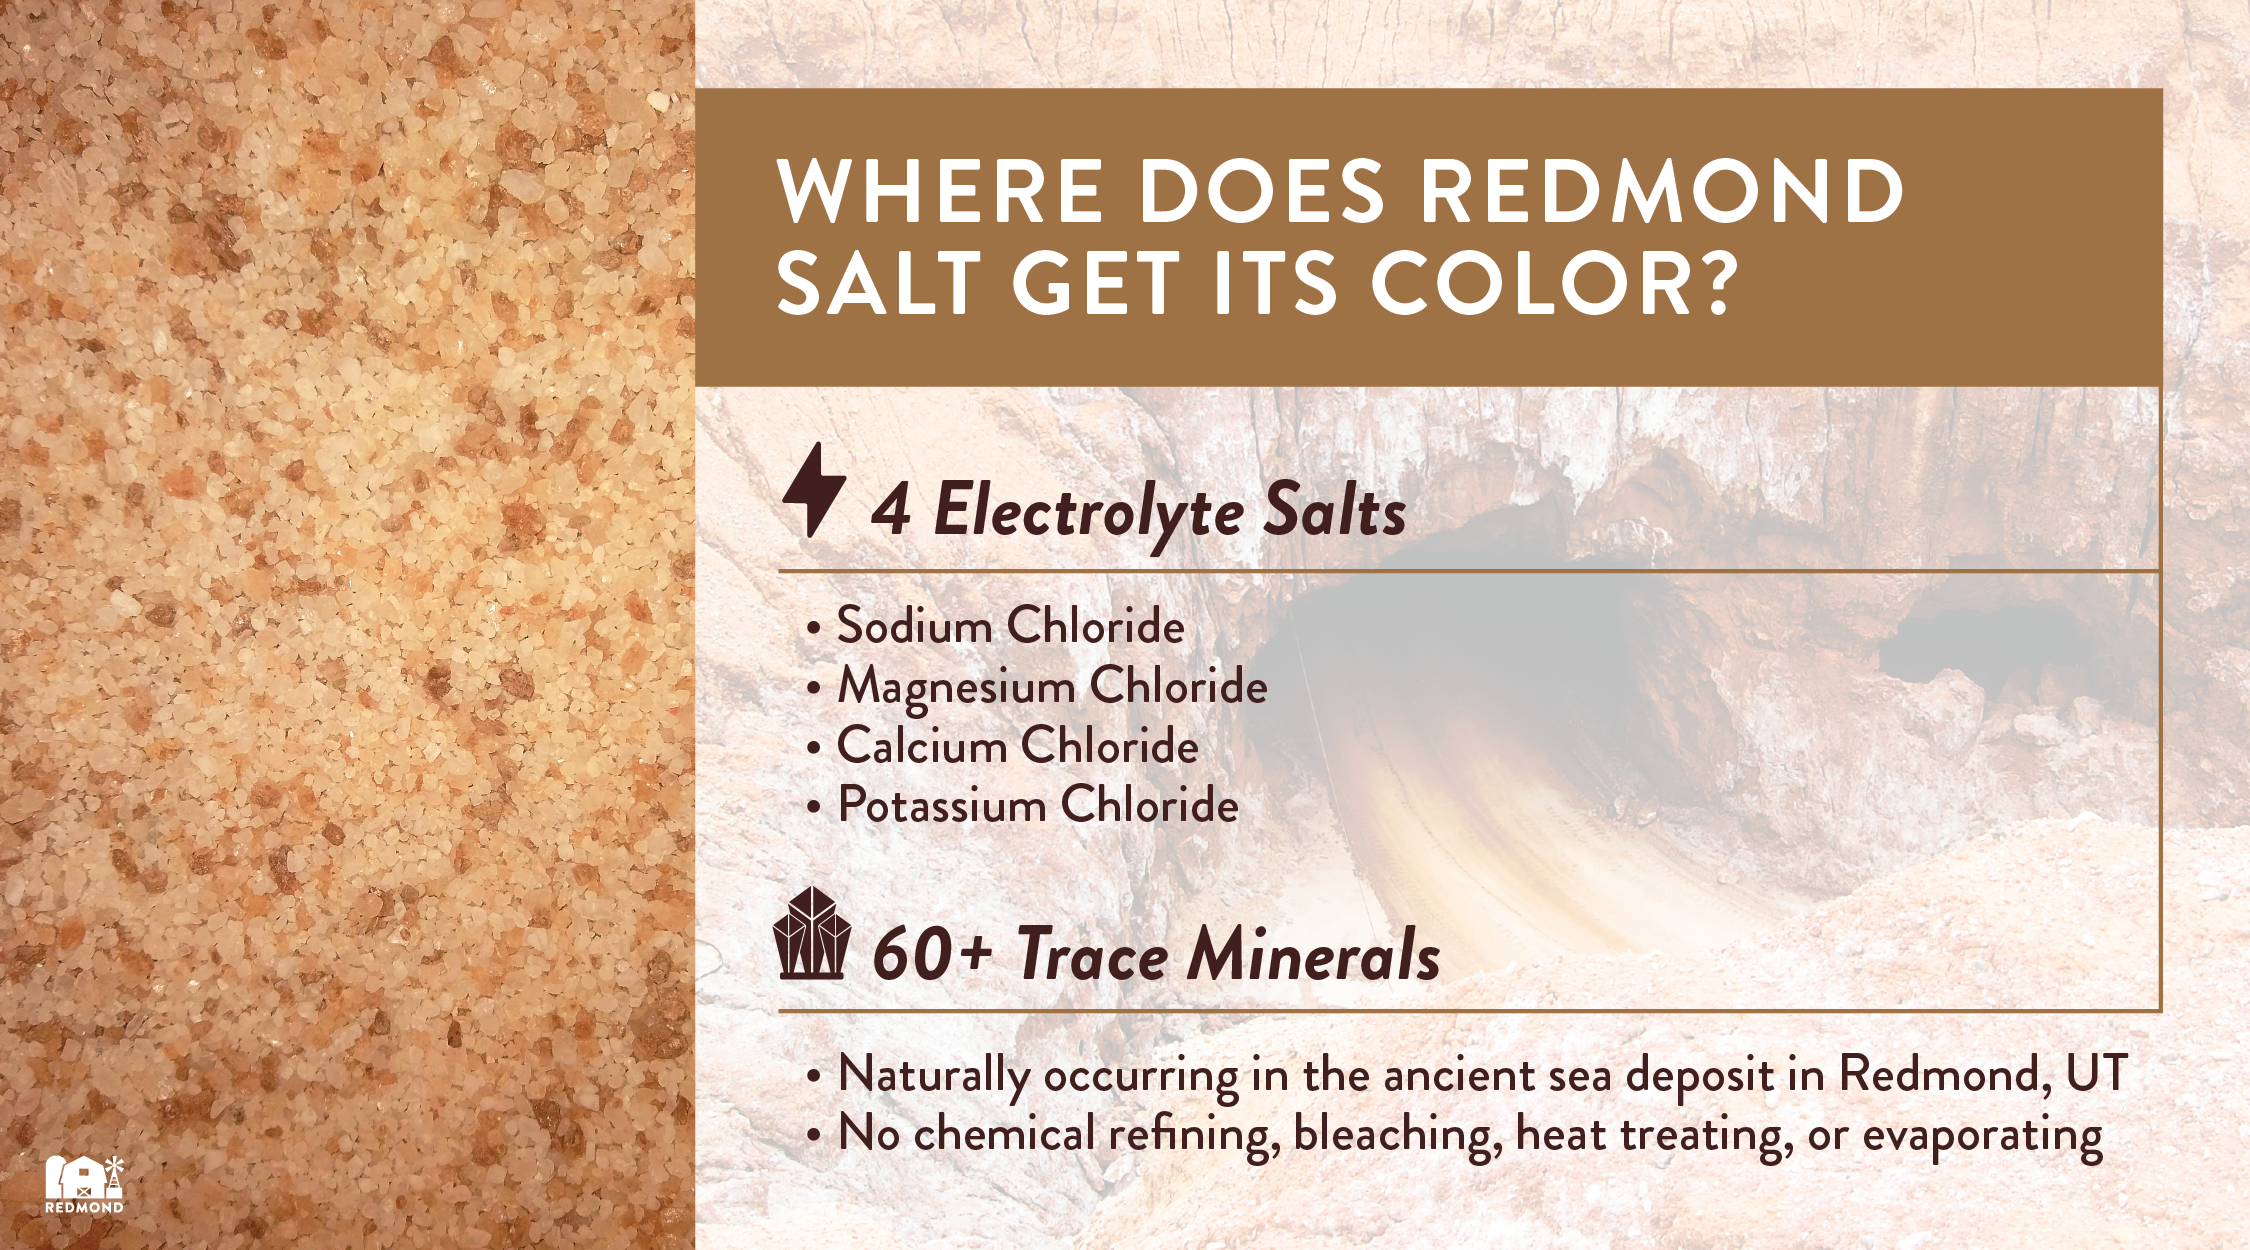 Where does Redmond salt get its color?